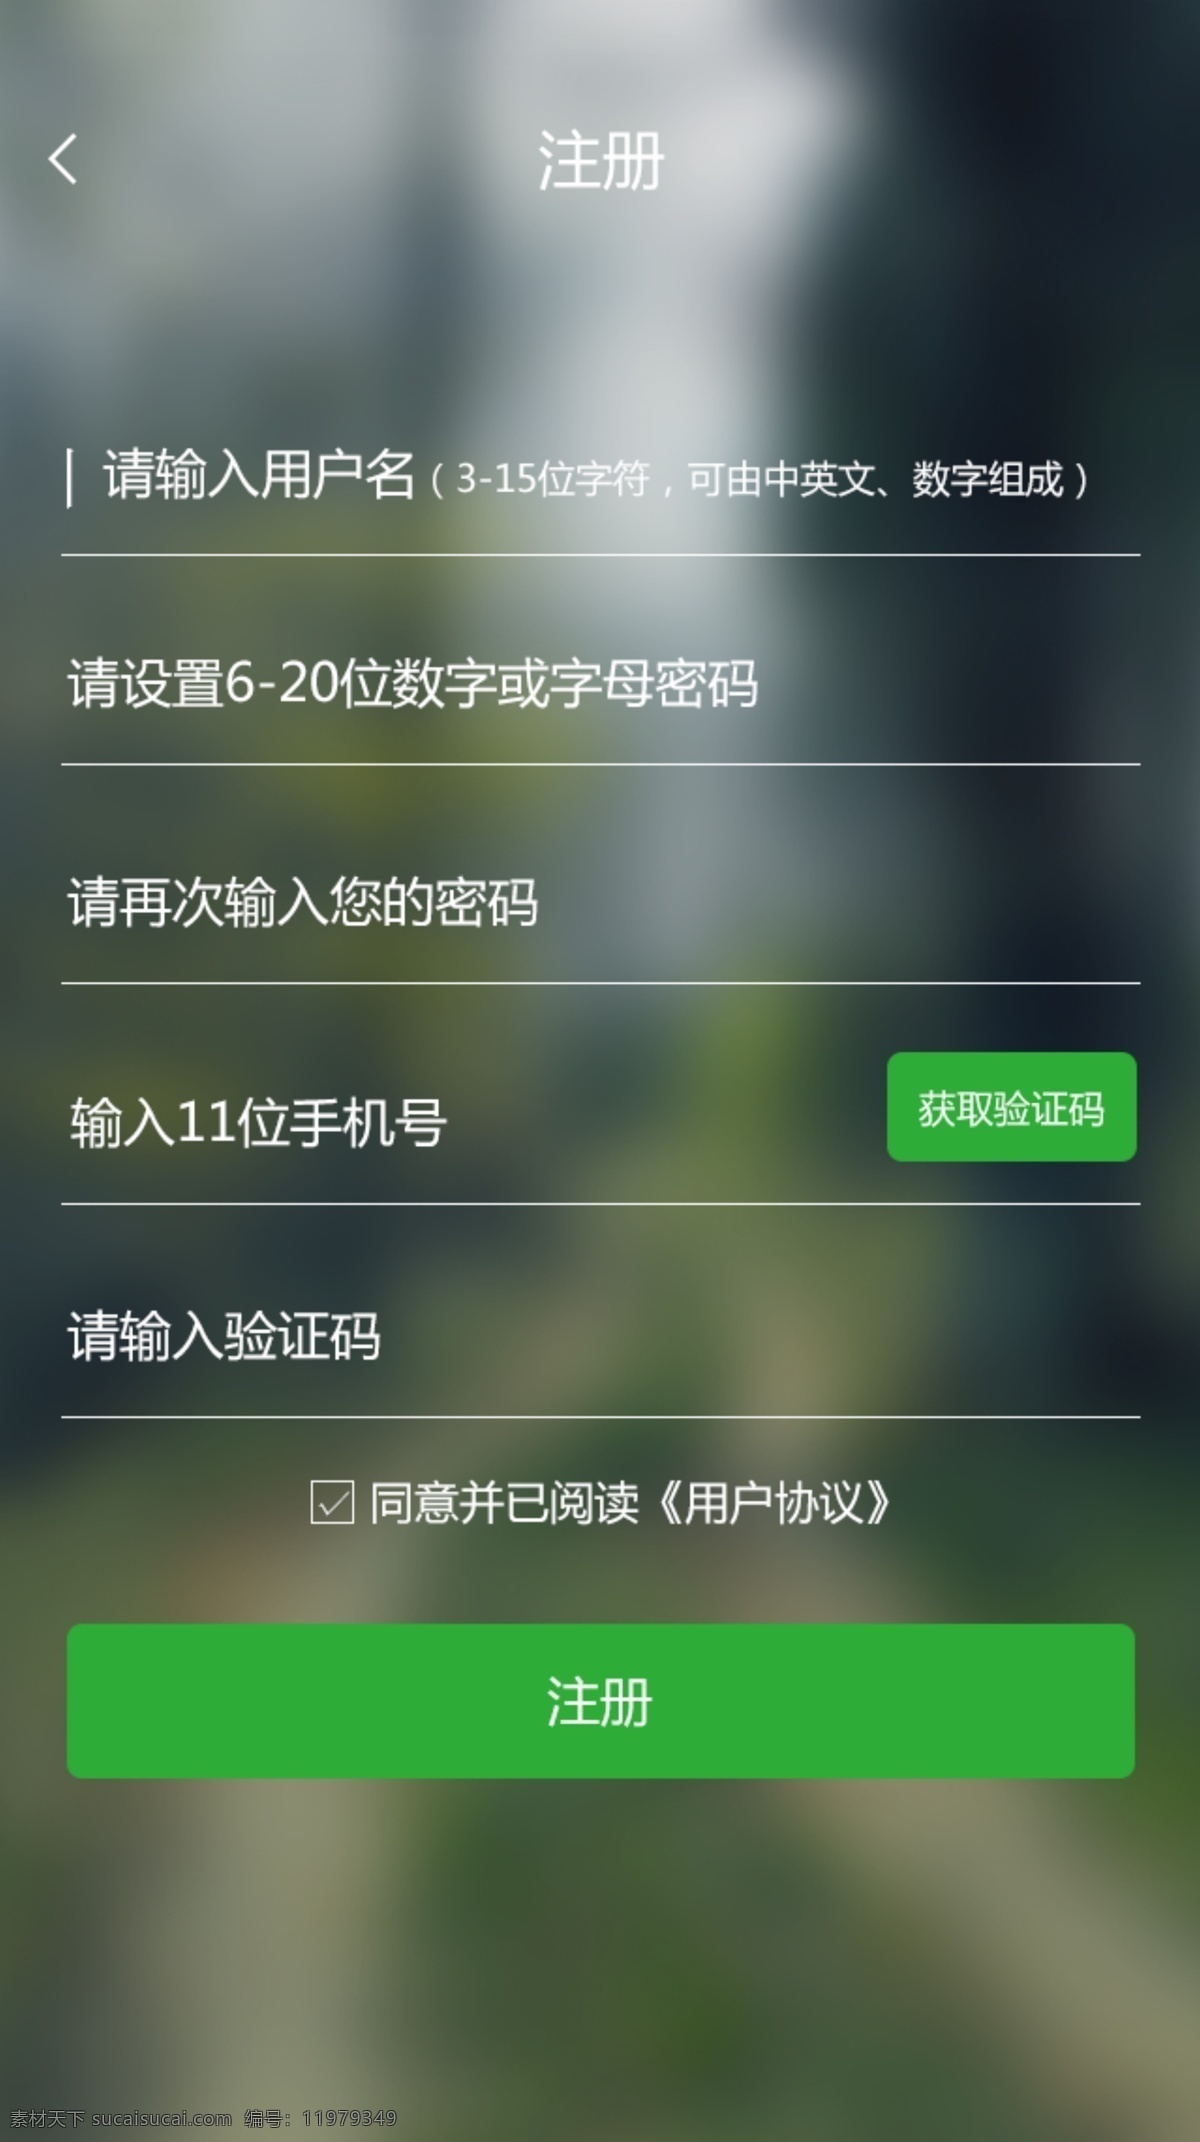 app 注册 界面 模板 绿色背景 模板设计 手机 交互 高清 手机登录页面 高清图片素材